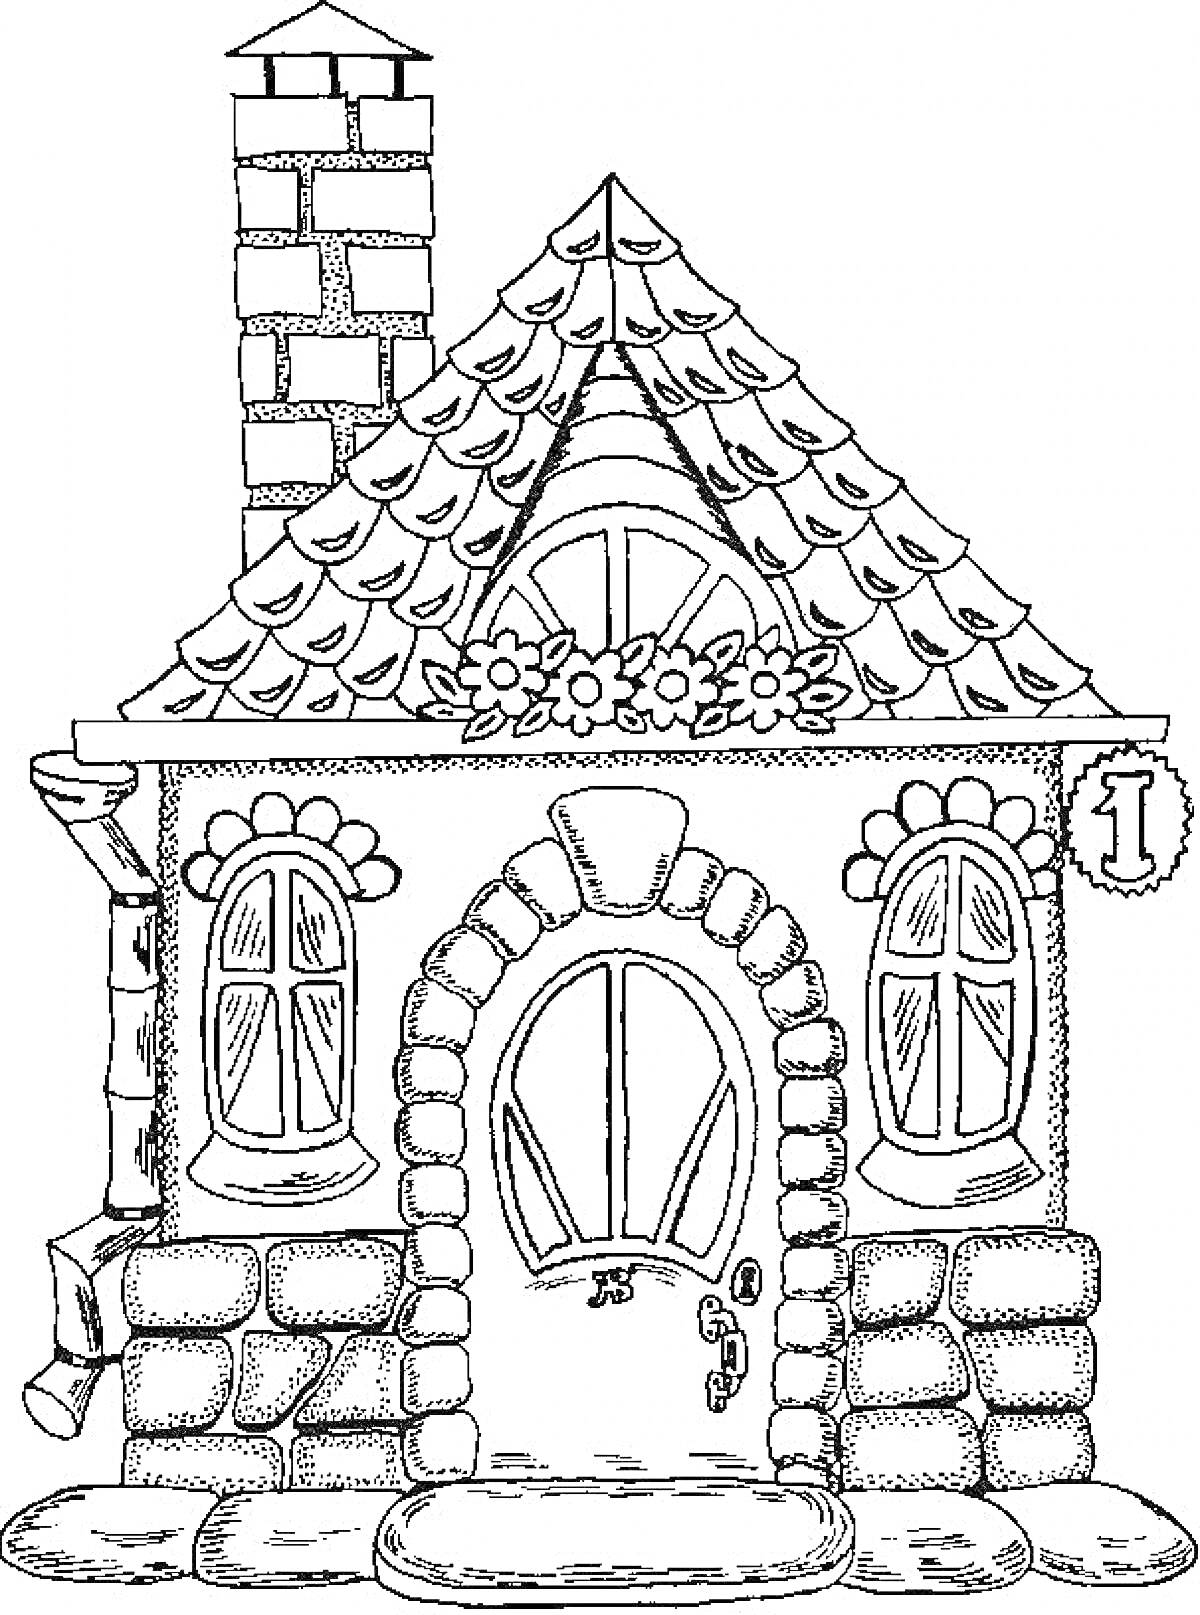 Раскраска Дом со цветочной клумбой, арочным окном и трубой из кирпича